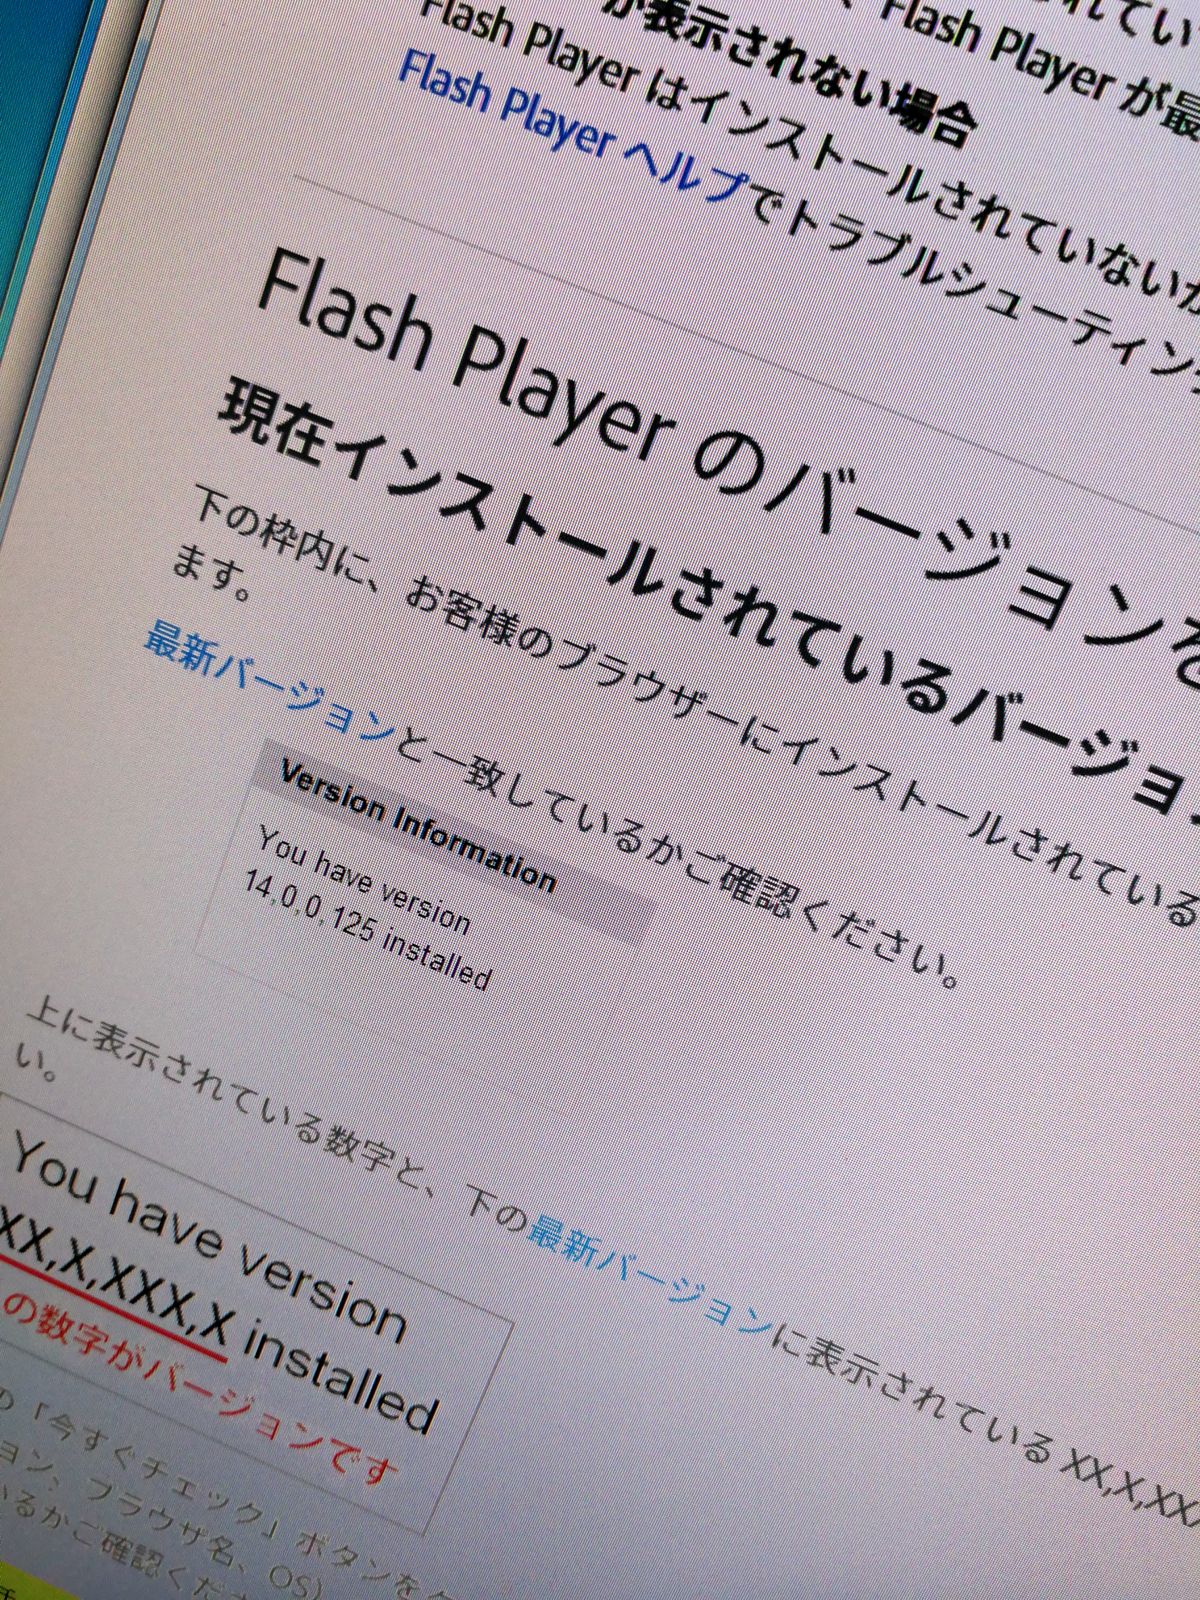 Flash Playerのバージョン